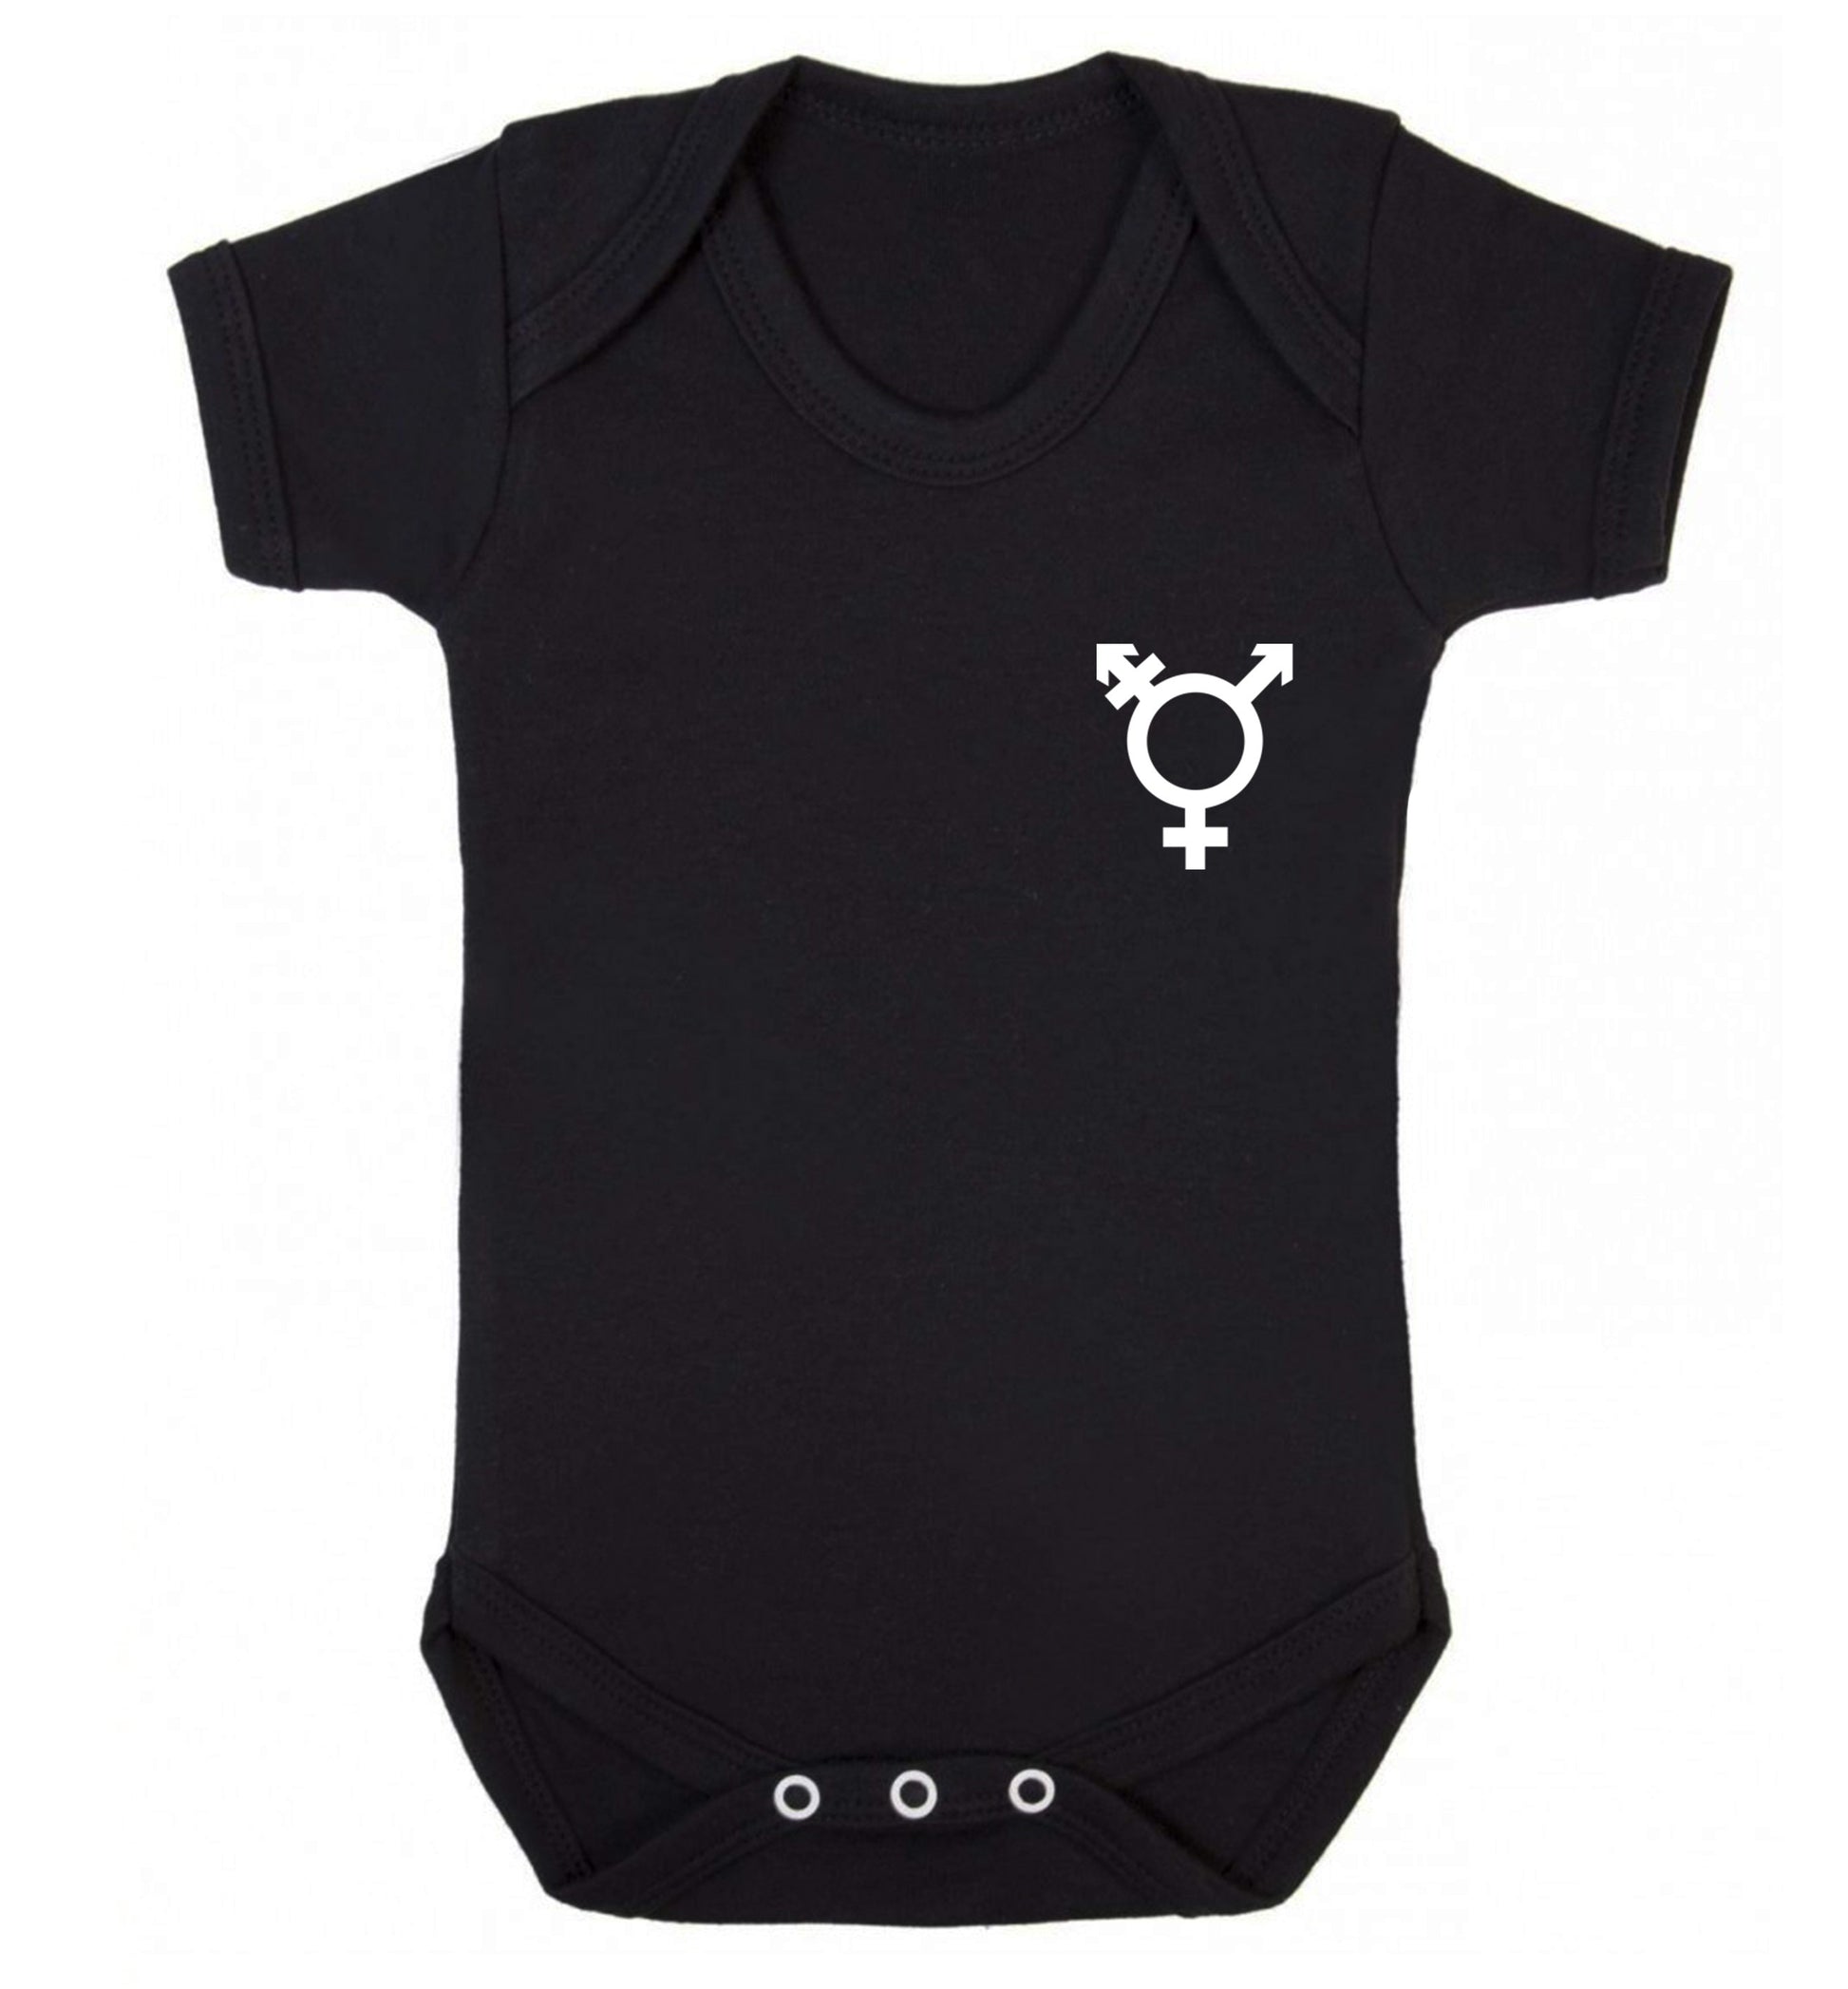 Trans gender symbol pocket Baby Vest black 18-24 months